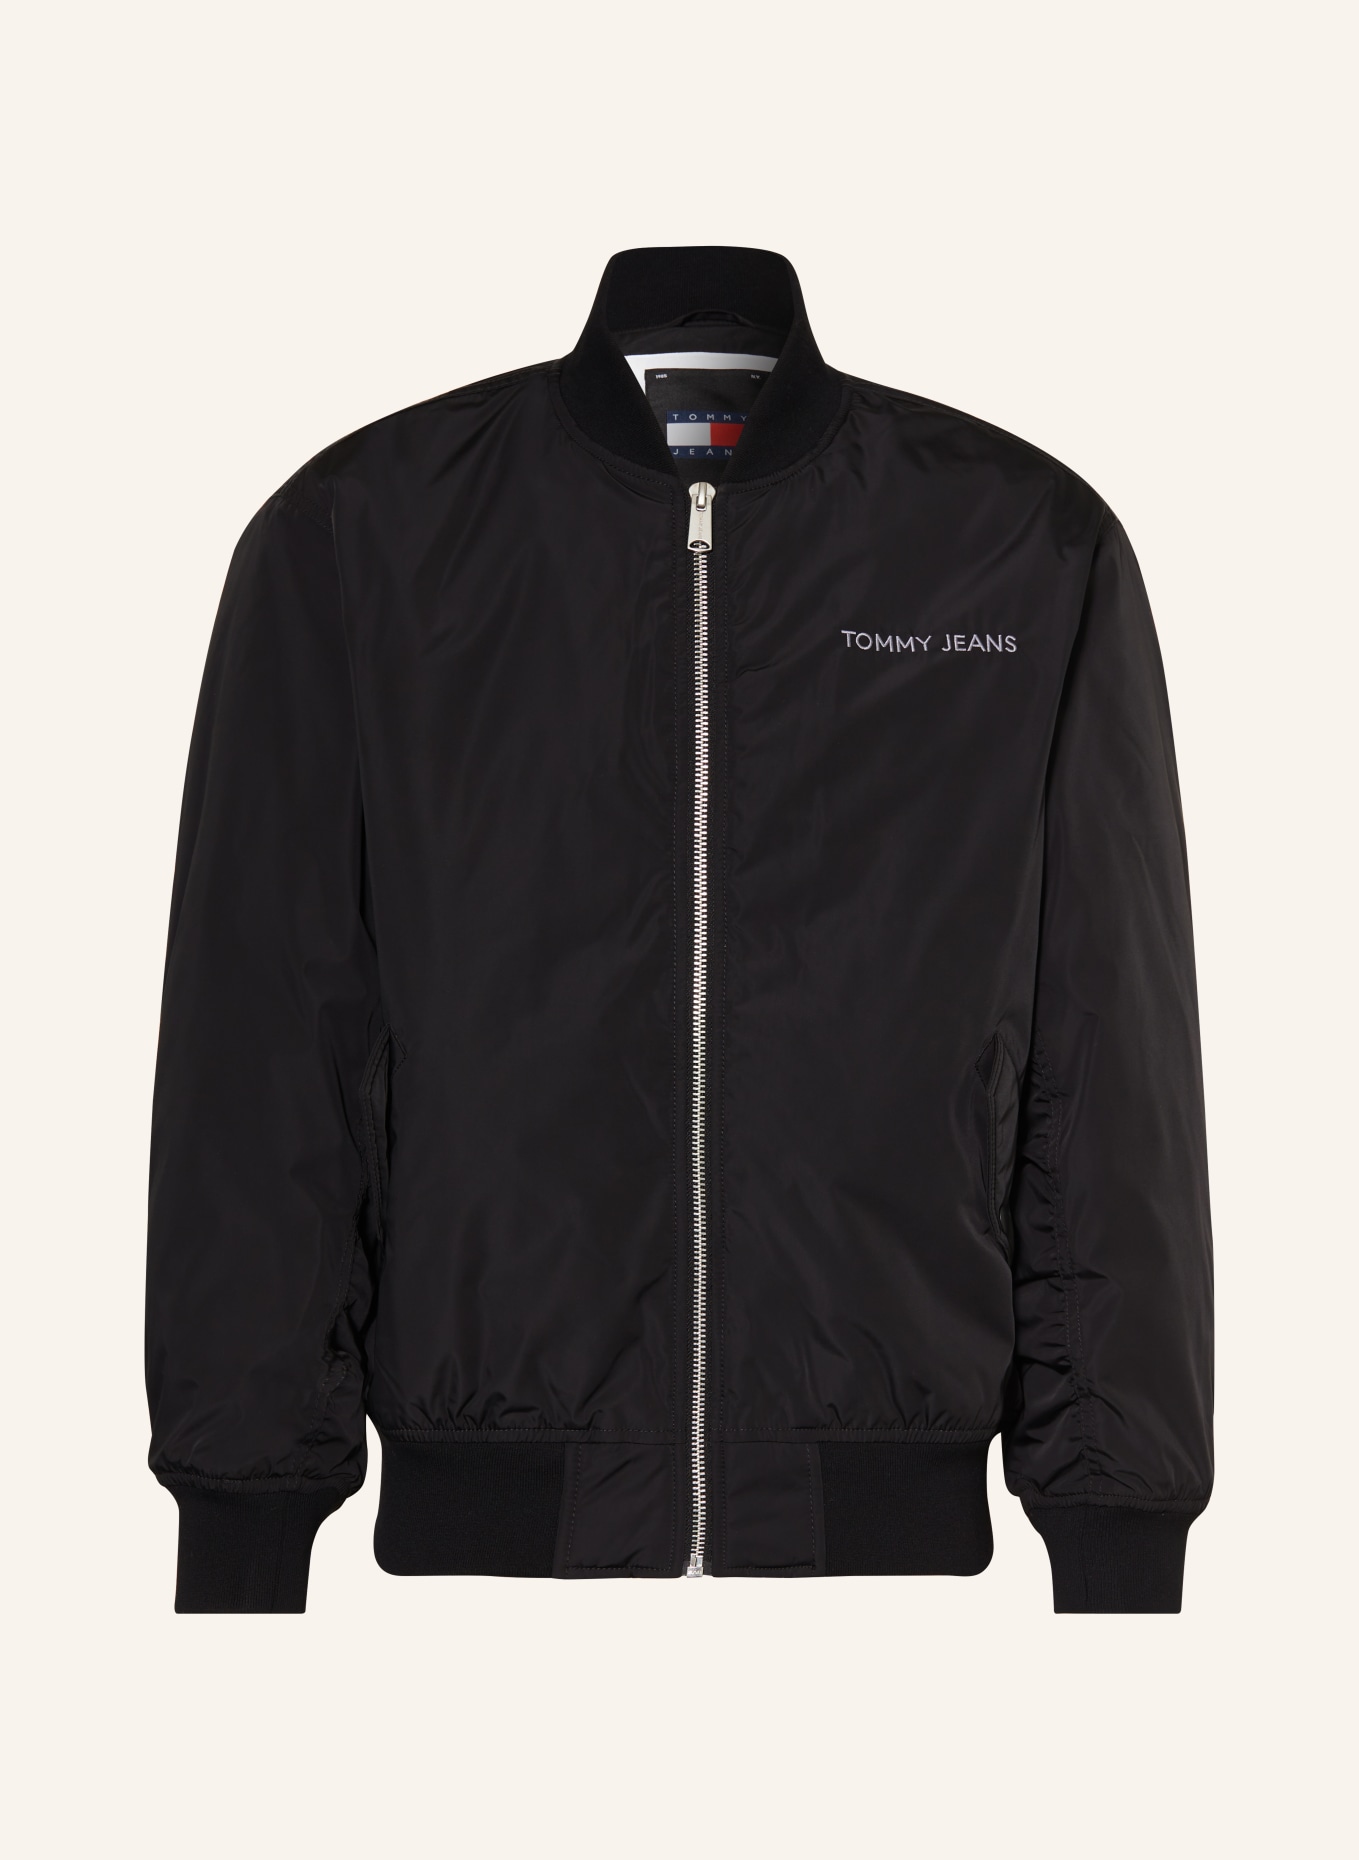 TOMMY JEANS Bomber jacket, Color: BLACK (Image 1)